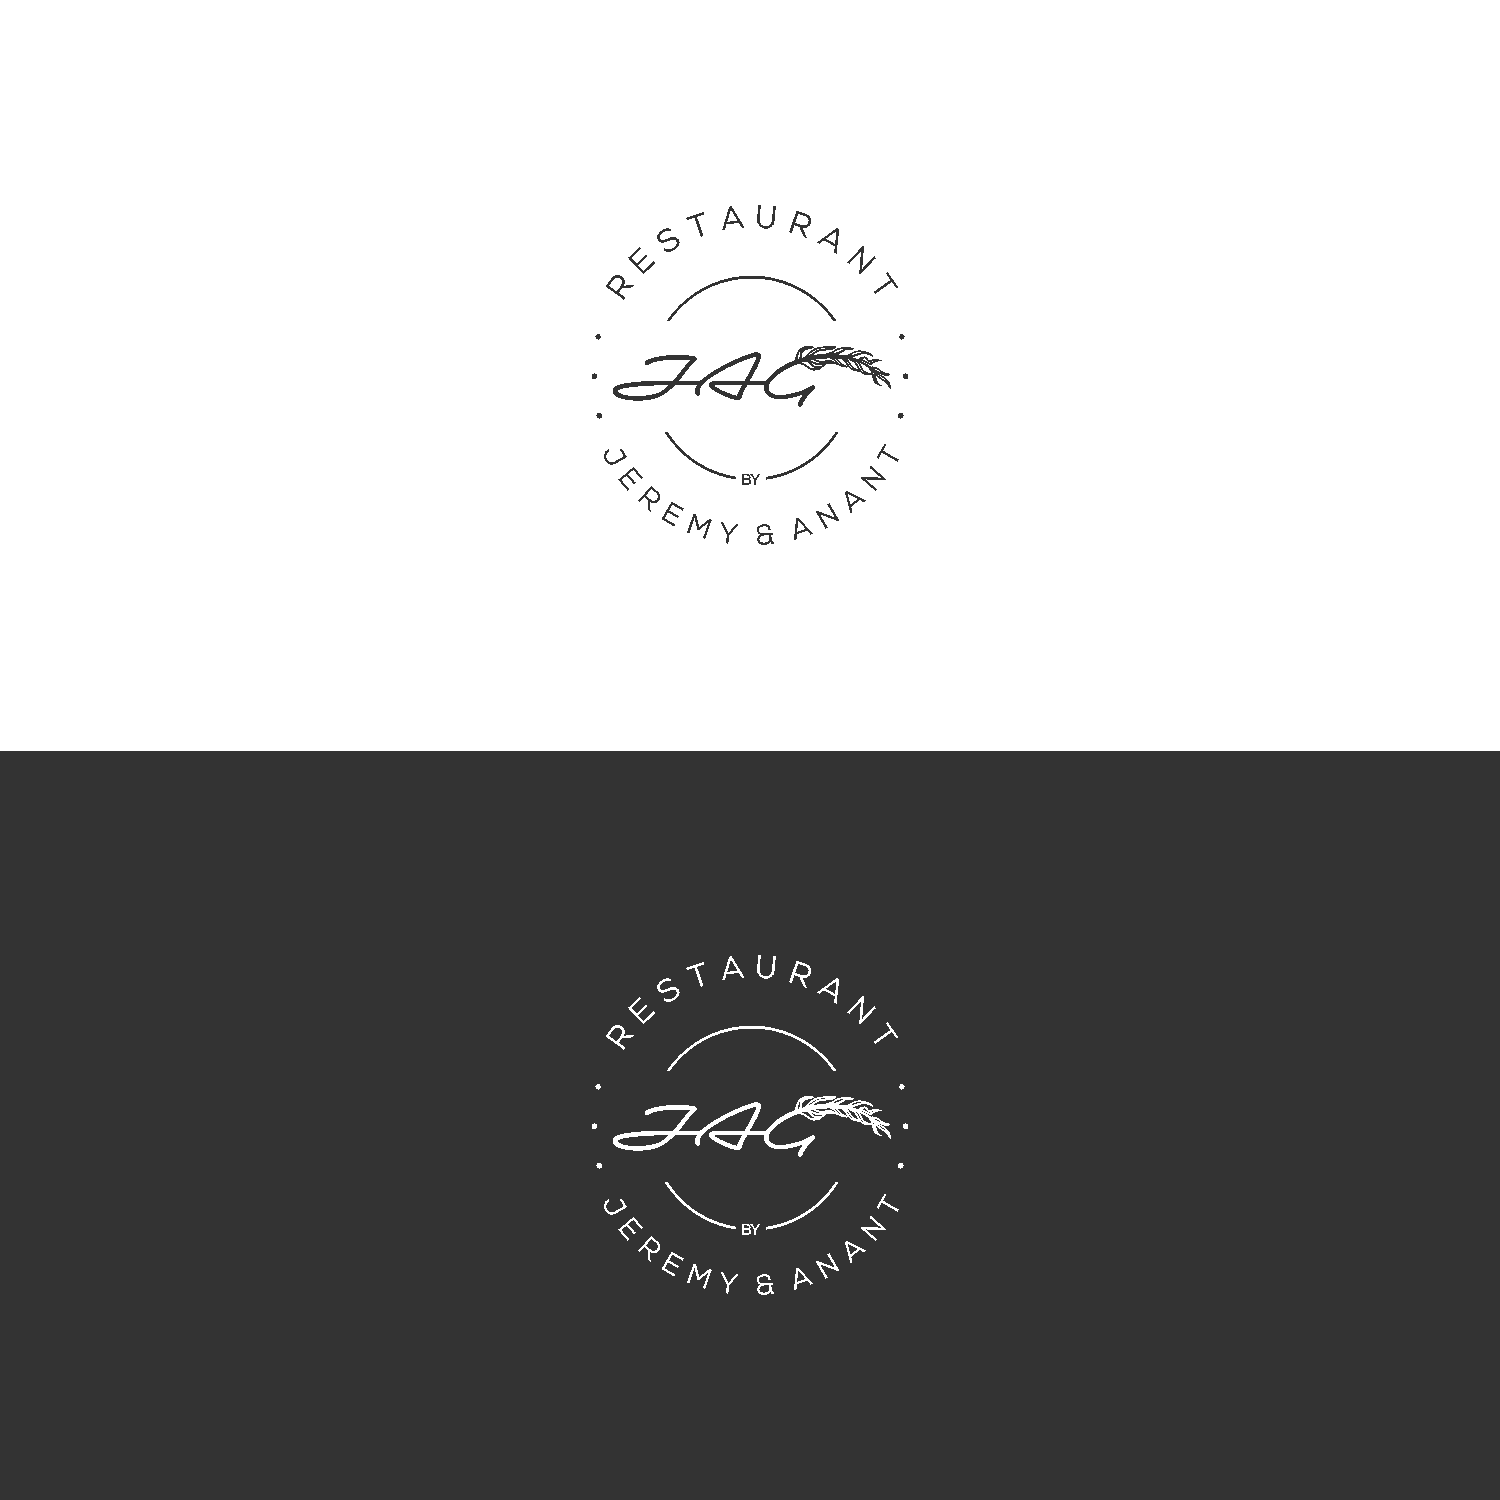 Artistic Black and White Restaurant Logo - Upmarket, Elegant, French Restaurant Logo Design for 